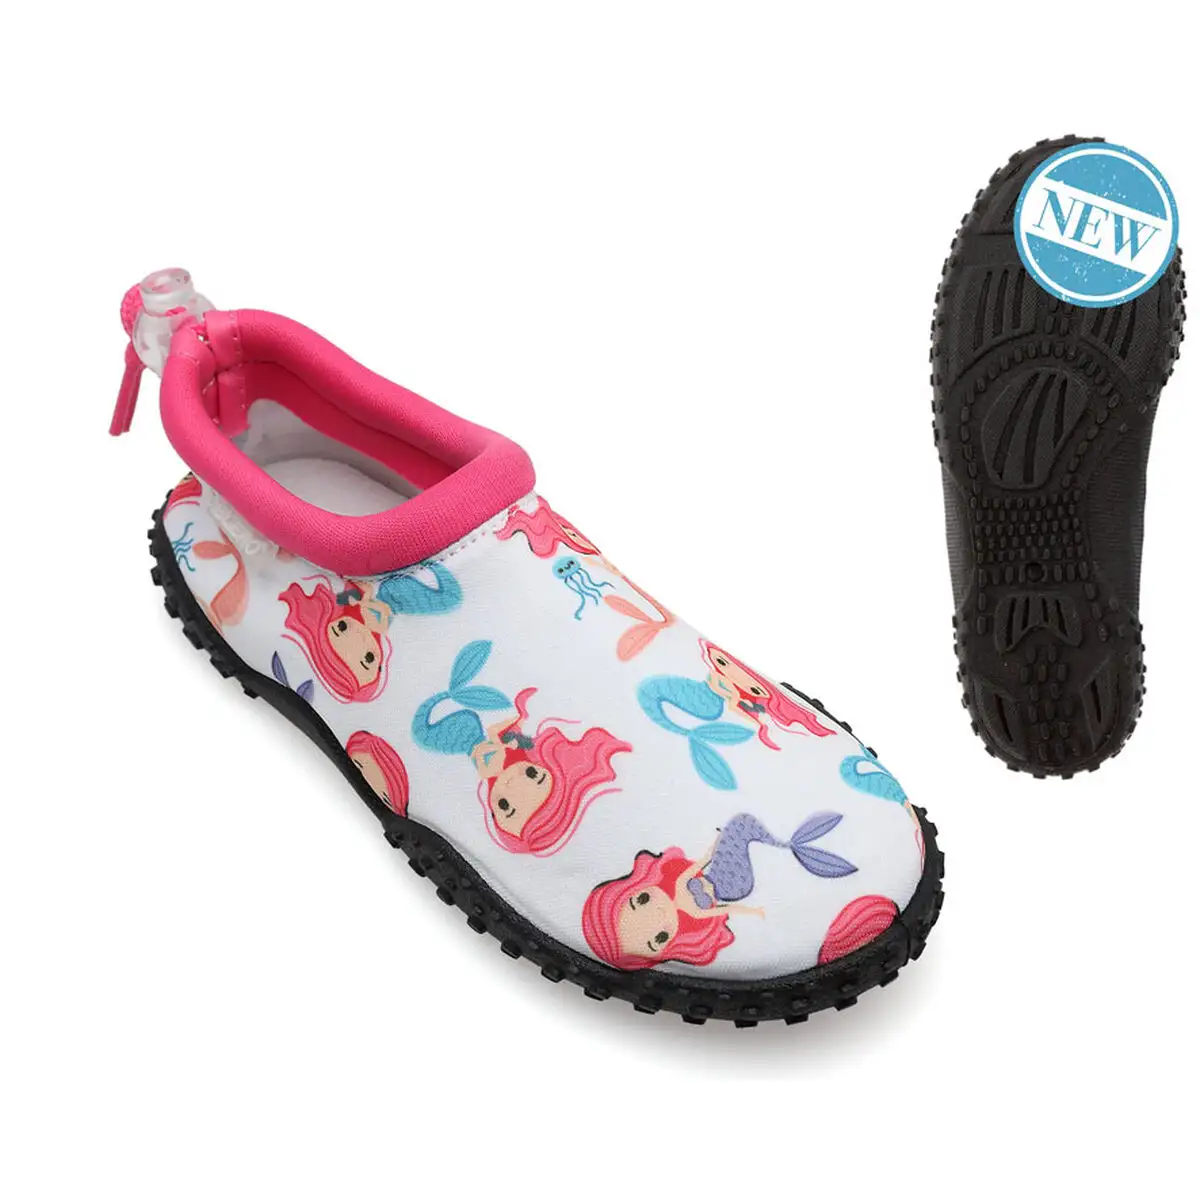 Chaussures aquatiques pour enfants sirene_5965. Bienvenue sur DIAYTAR SENEGAL - Où le Shopping est une Affaire Personnelle. Découvrez notre sélection et choisissez des produits qui reflètent votre unicité et votre individualité.